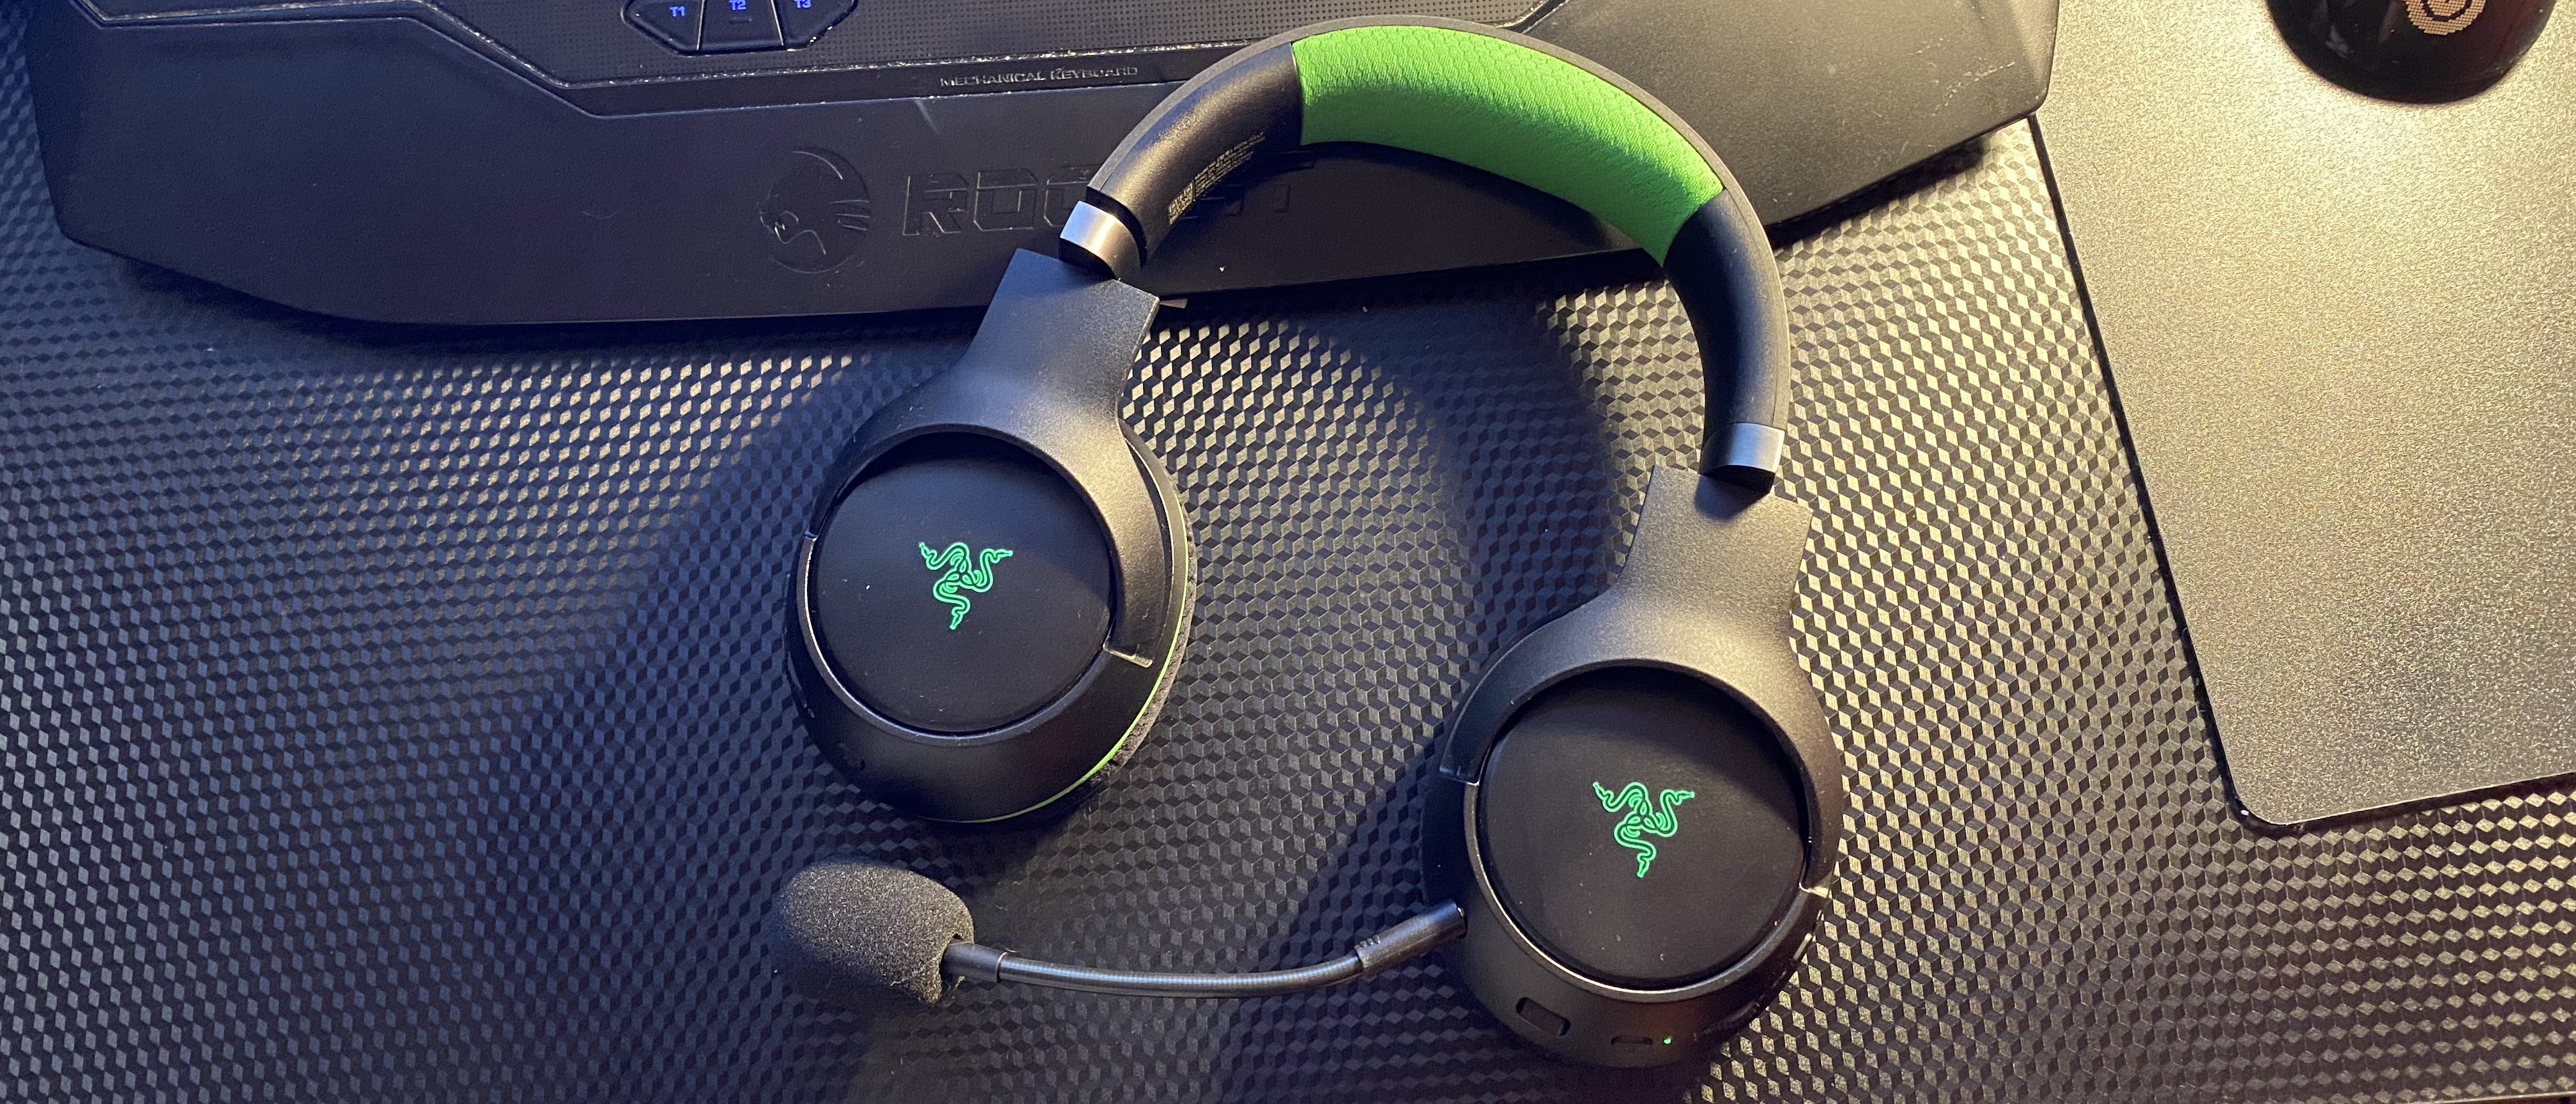  Video Games, Razer Kaira Pro Wireless Gaming Headset for Xbox  Series X